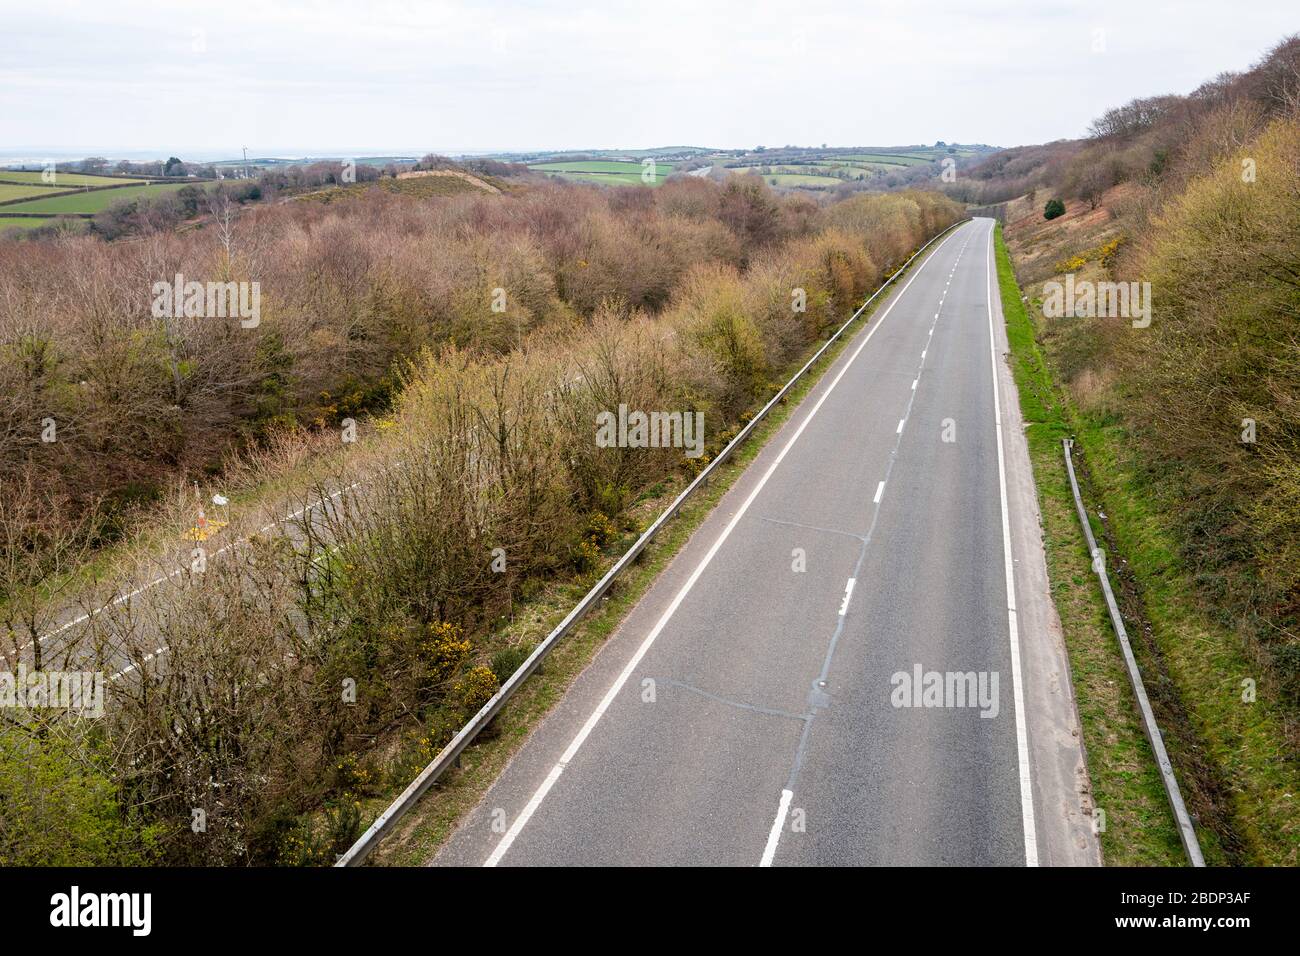 La carretera troncal A30 vacía no muestra tráfico de vacaciones de primavera con destino a Cornwall en el suroeste de Inglaterra durante las restricciones de viaje COVID-19, abril de 2020. Foto de stock